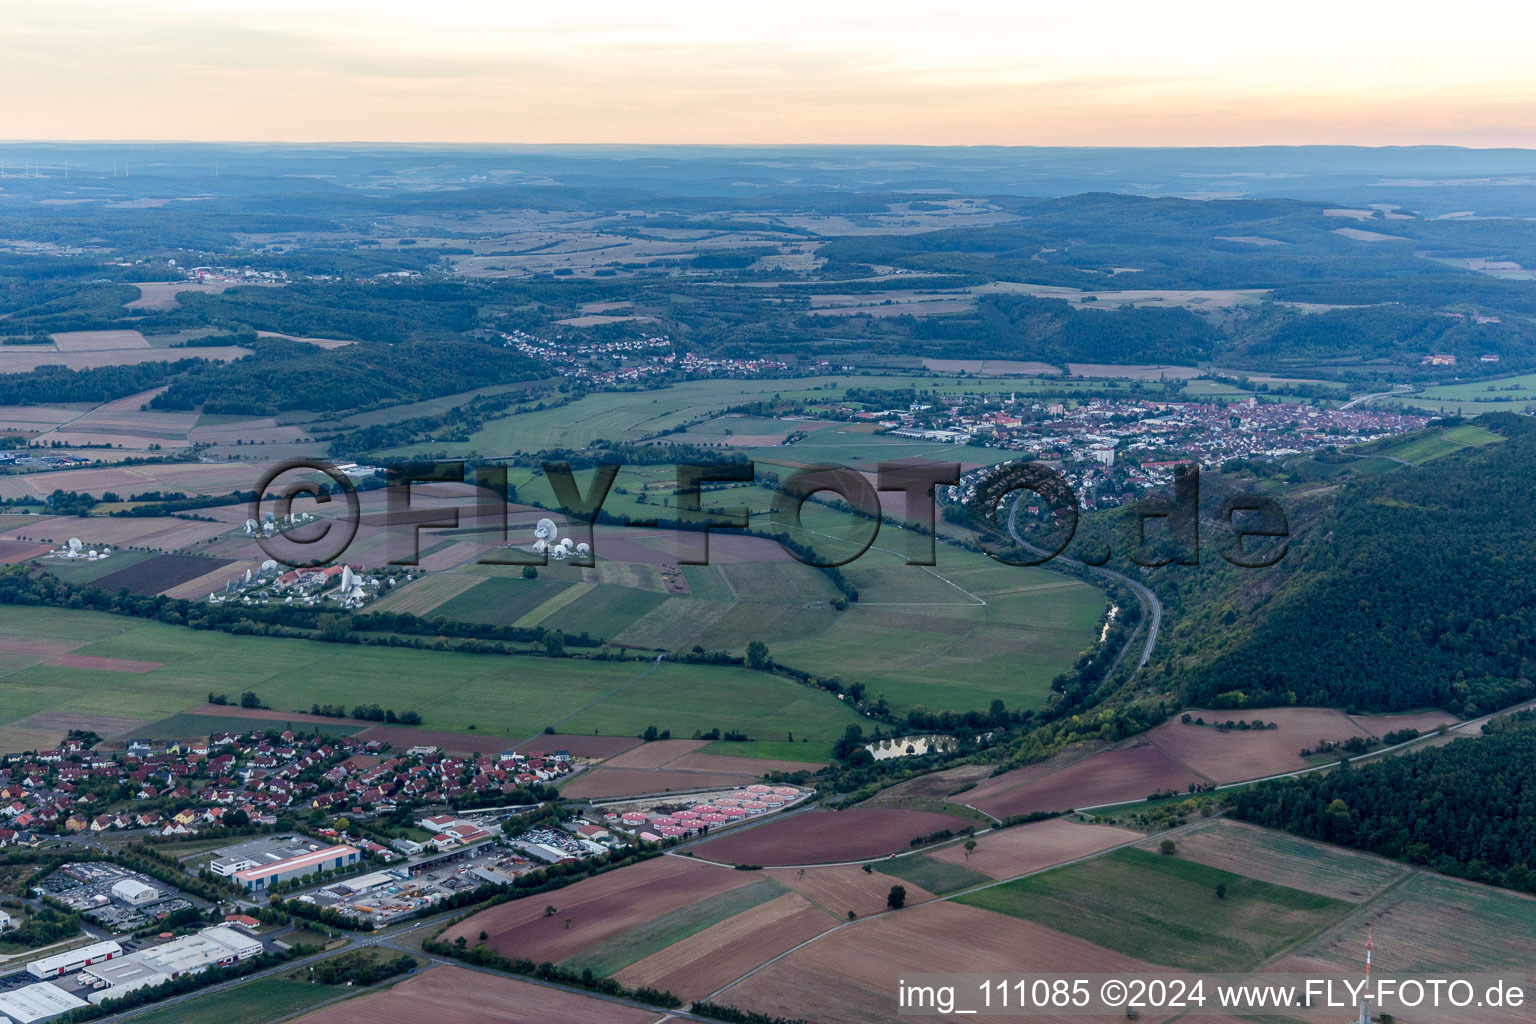 Luftbild von Hammelburg, Intelsat Satellitenantennen im Bundesland Bayern, Deutschland